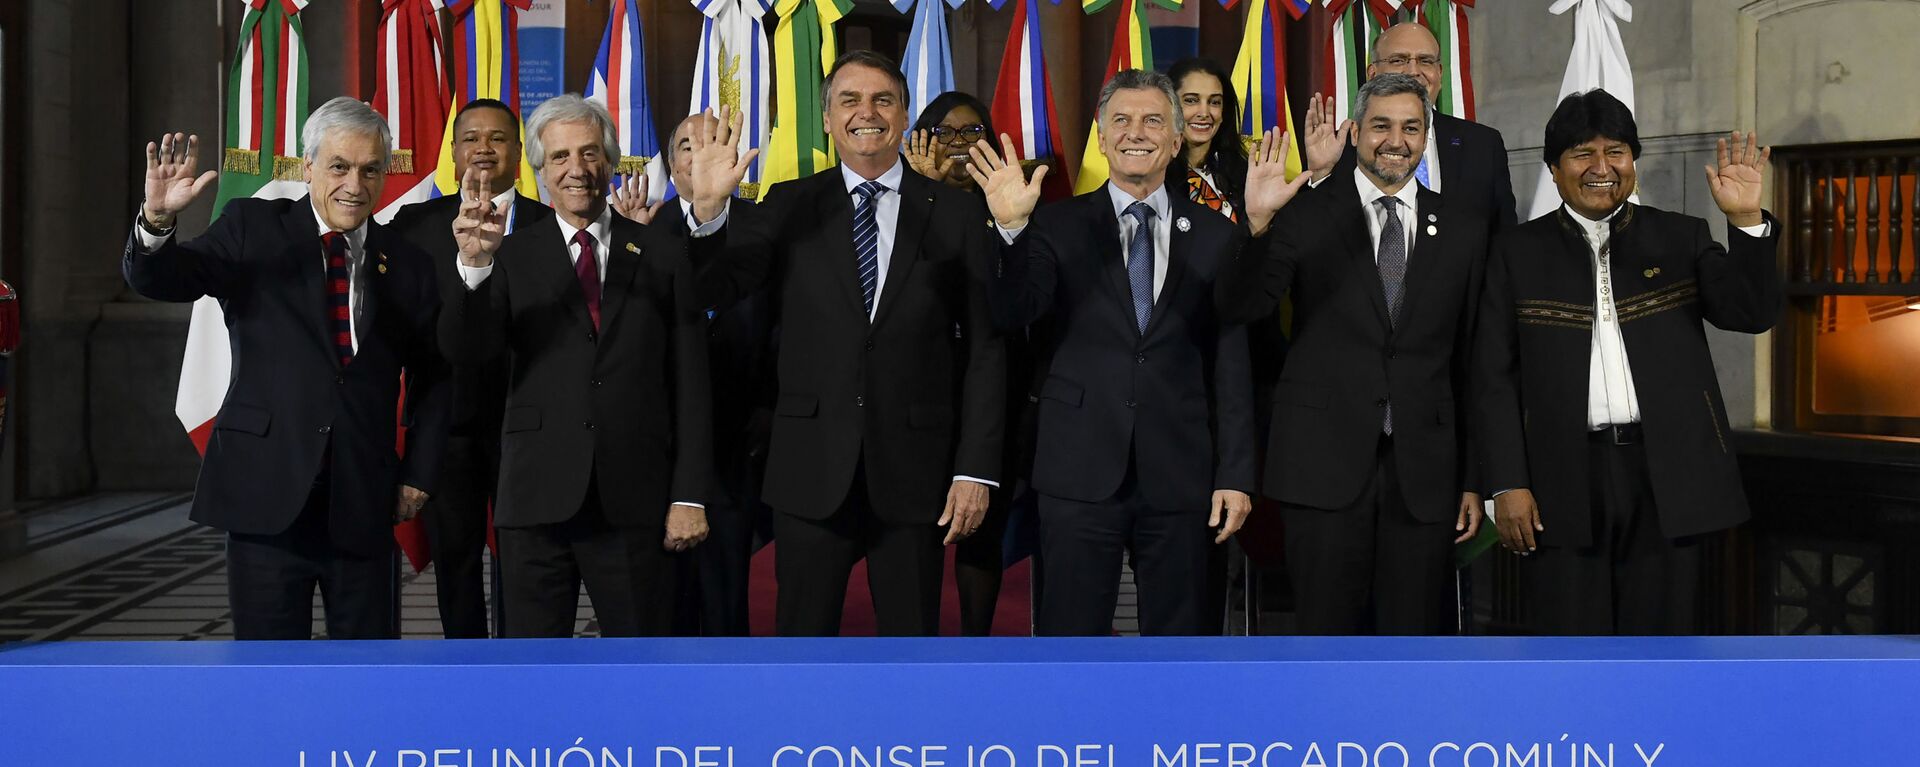 Líderes de países do Mercosul posam na última cúpula realizada presencialmente antes da pandemia em Santa Fé, Argentina, em 17 de julho de 2019 - Sputnik Brasil, 1920, 08.07.2021